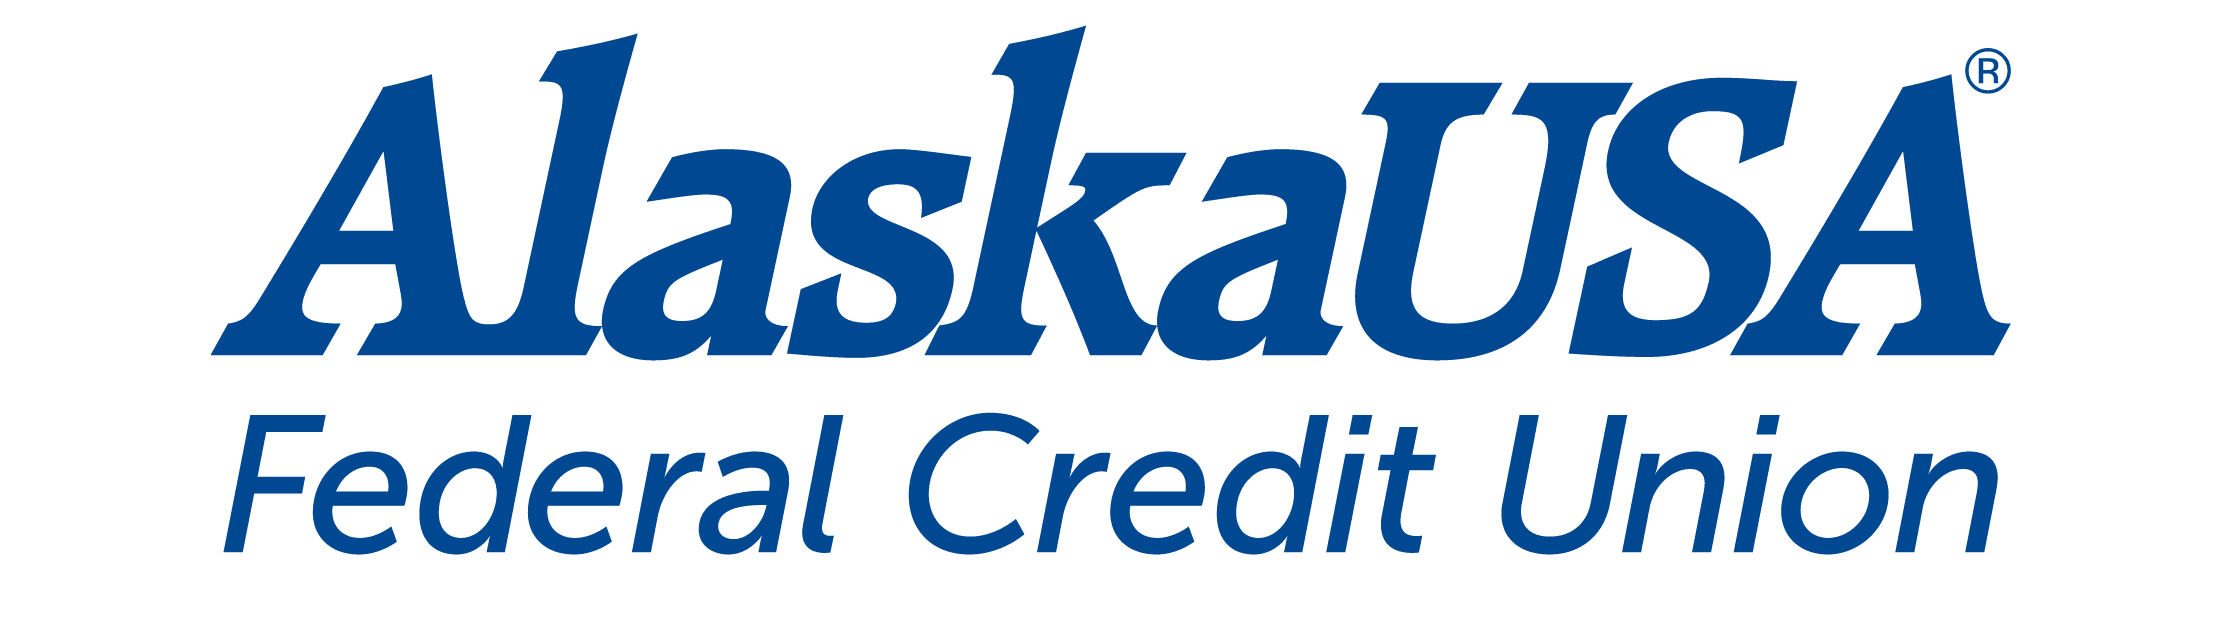 Alaska USA Federal Credit Union logo